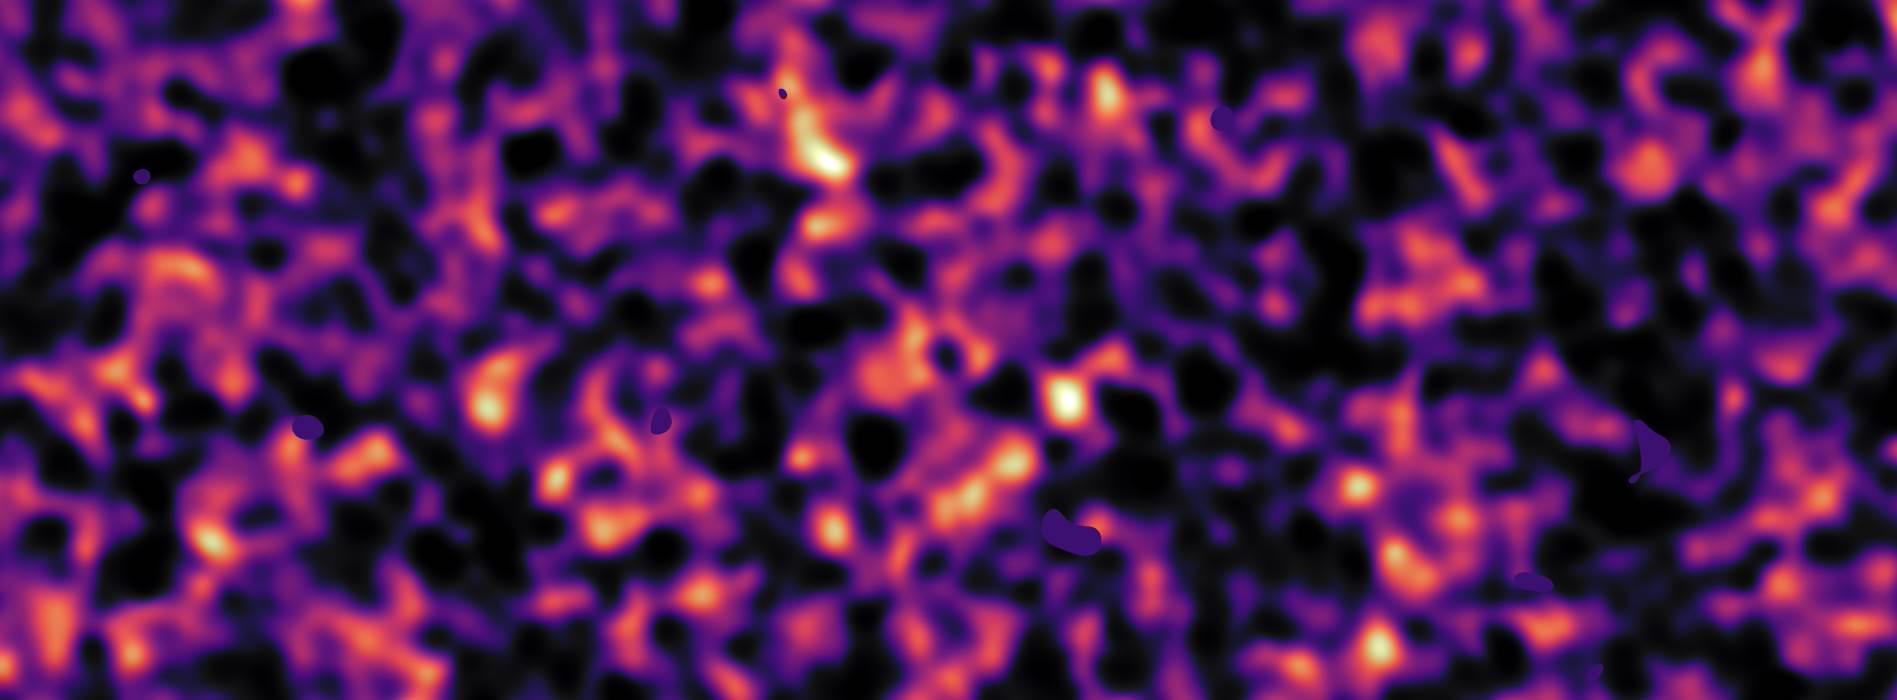 La materia oscura podría ser más lisa de lo creído